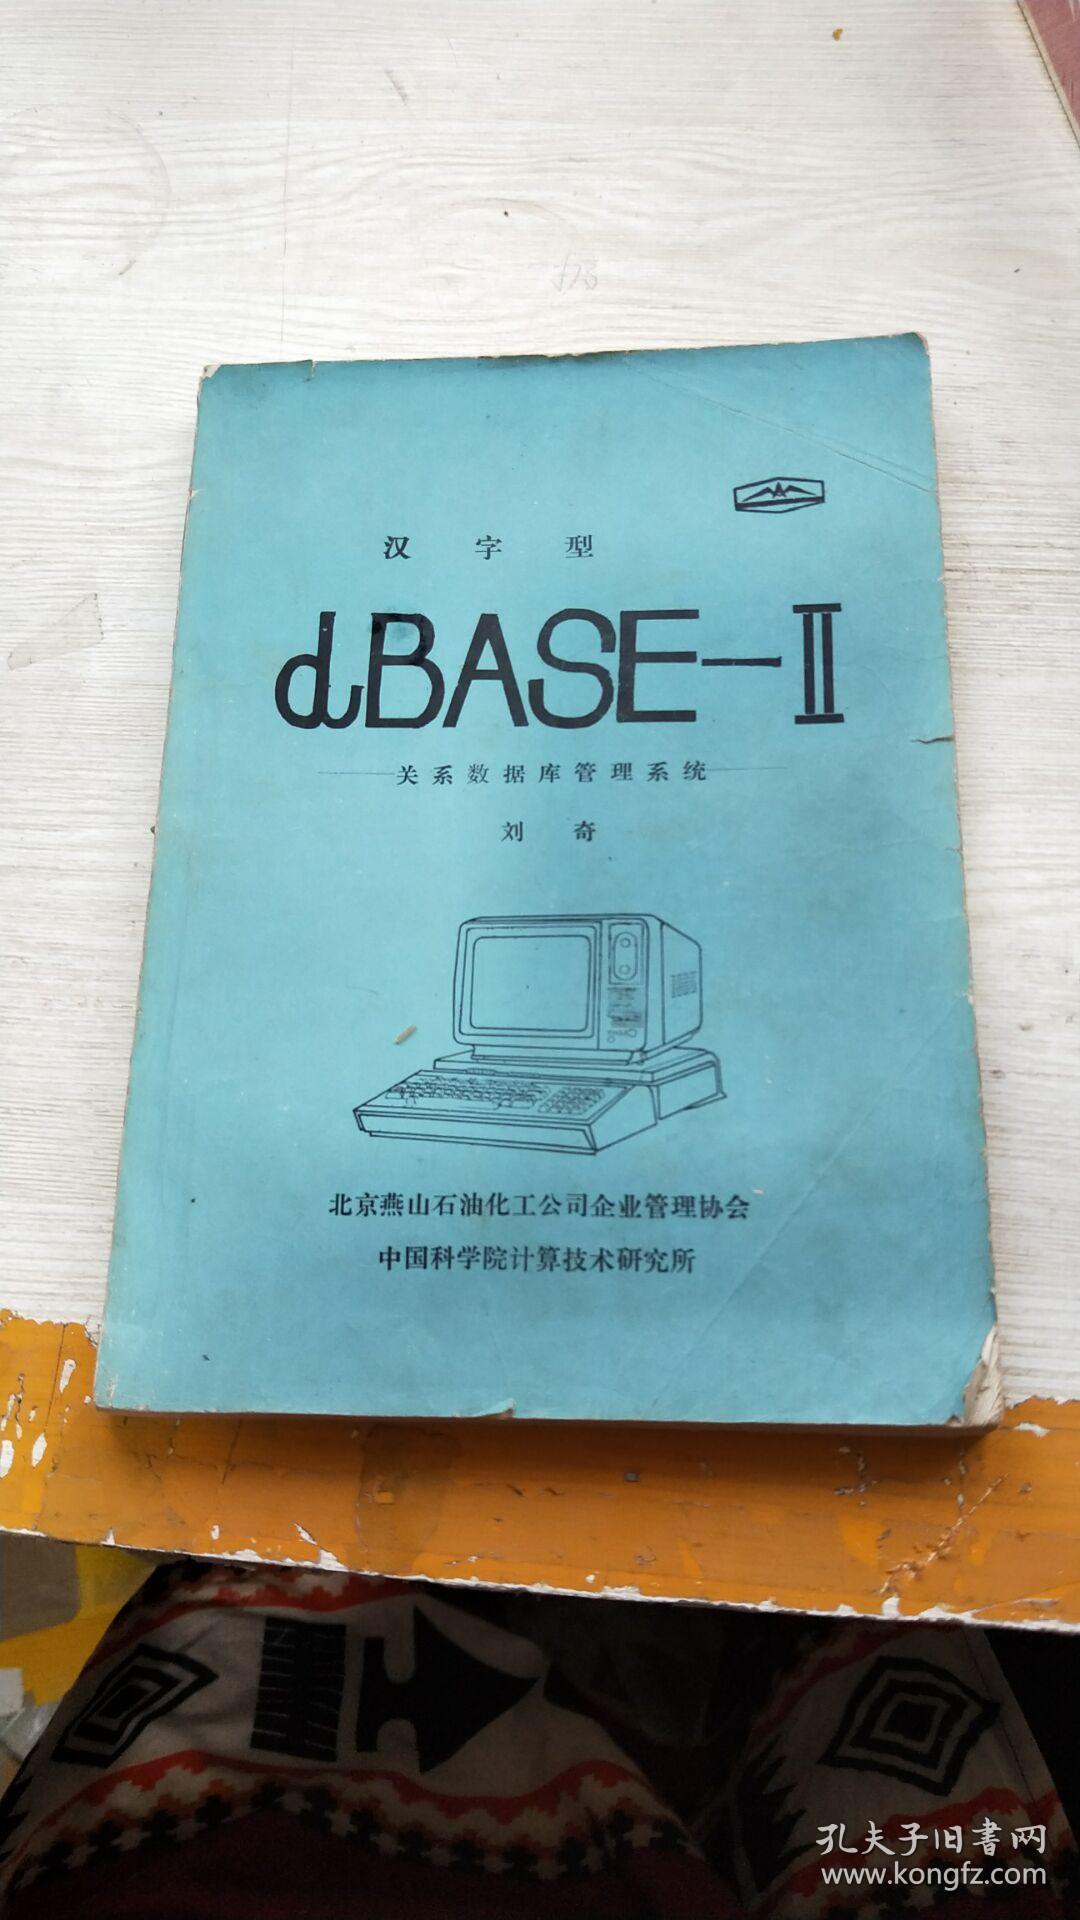 汉字型dBASE-Ⅱ关系数据库管理系统 书脊书皮